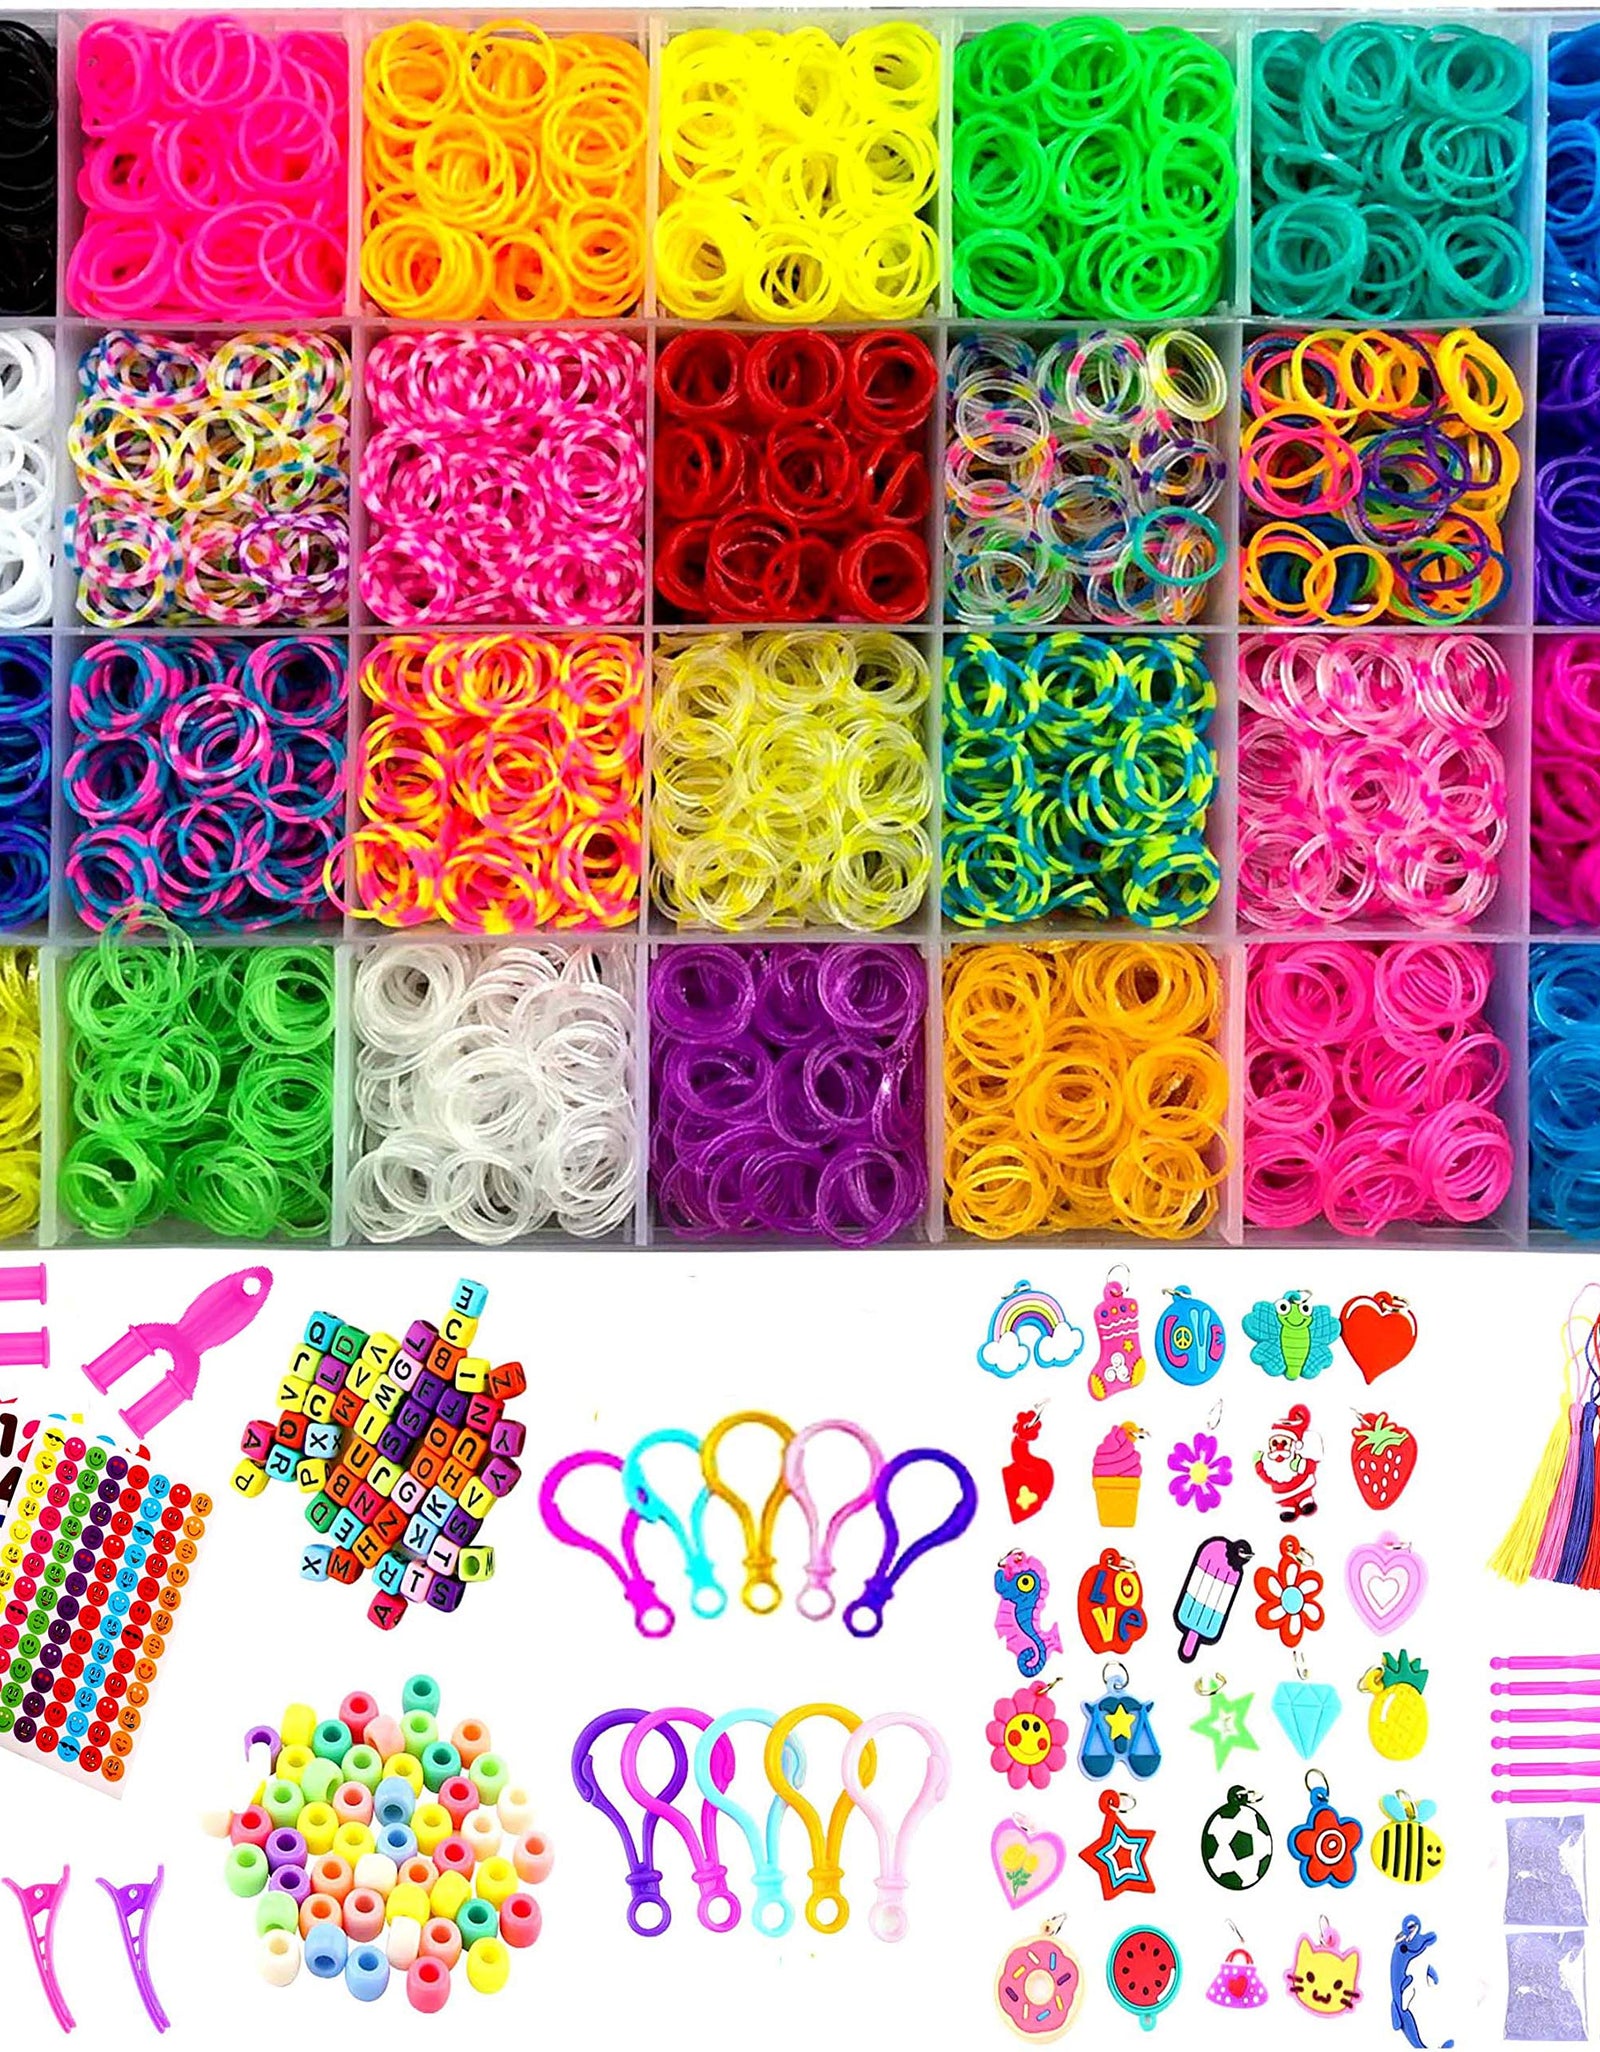 YITOHOP 12000+ Colorful Loom Bands Set , Premium Rubber Bands for Bracelet Making Kit DIY Band Bracelet Mega Refill Kit Girls Gift to Improve Imagination